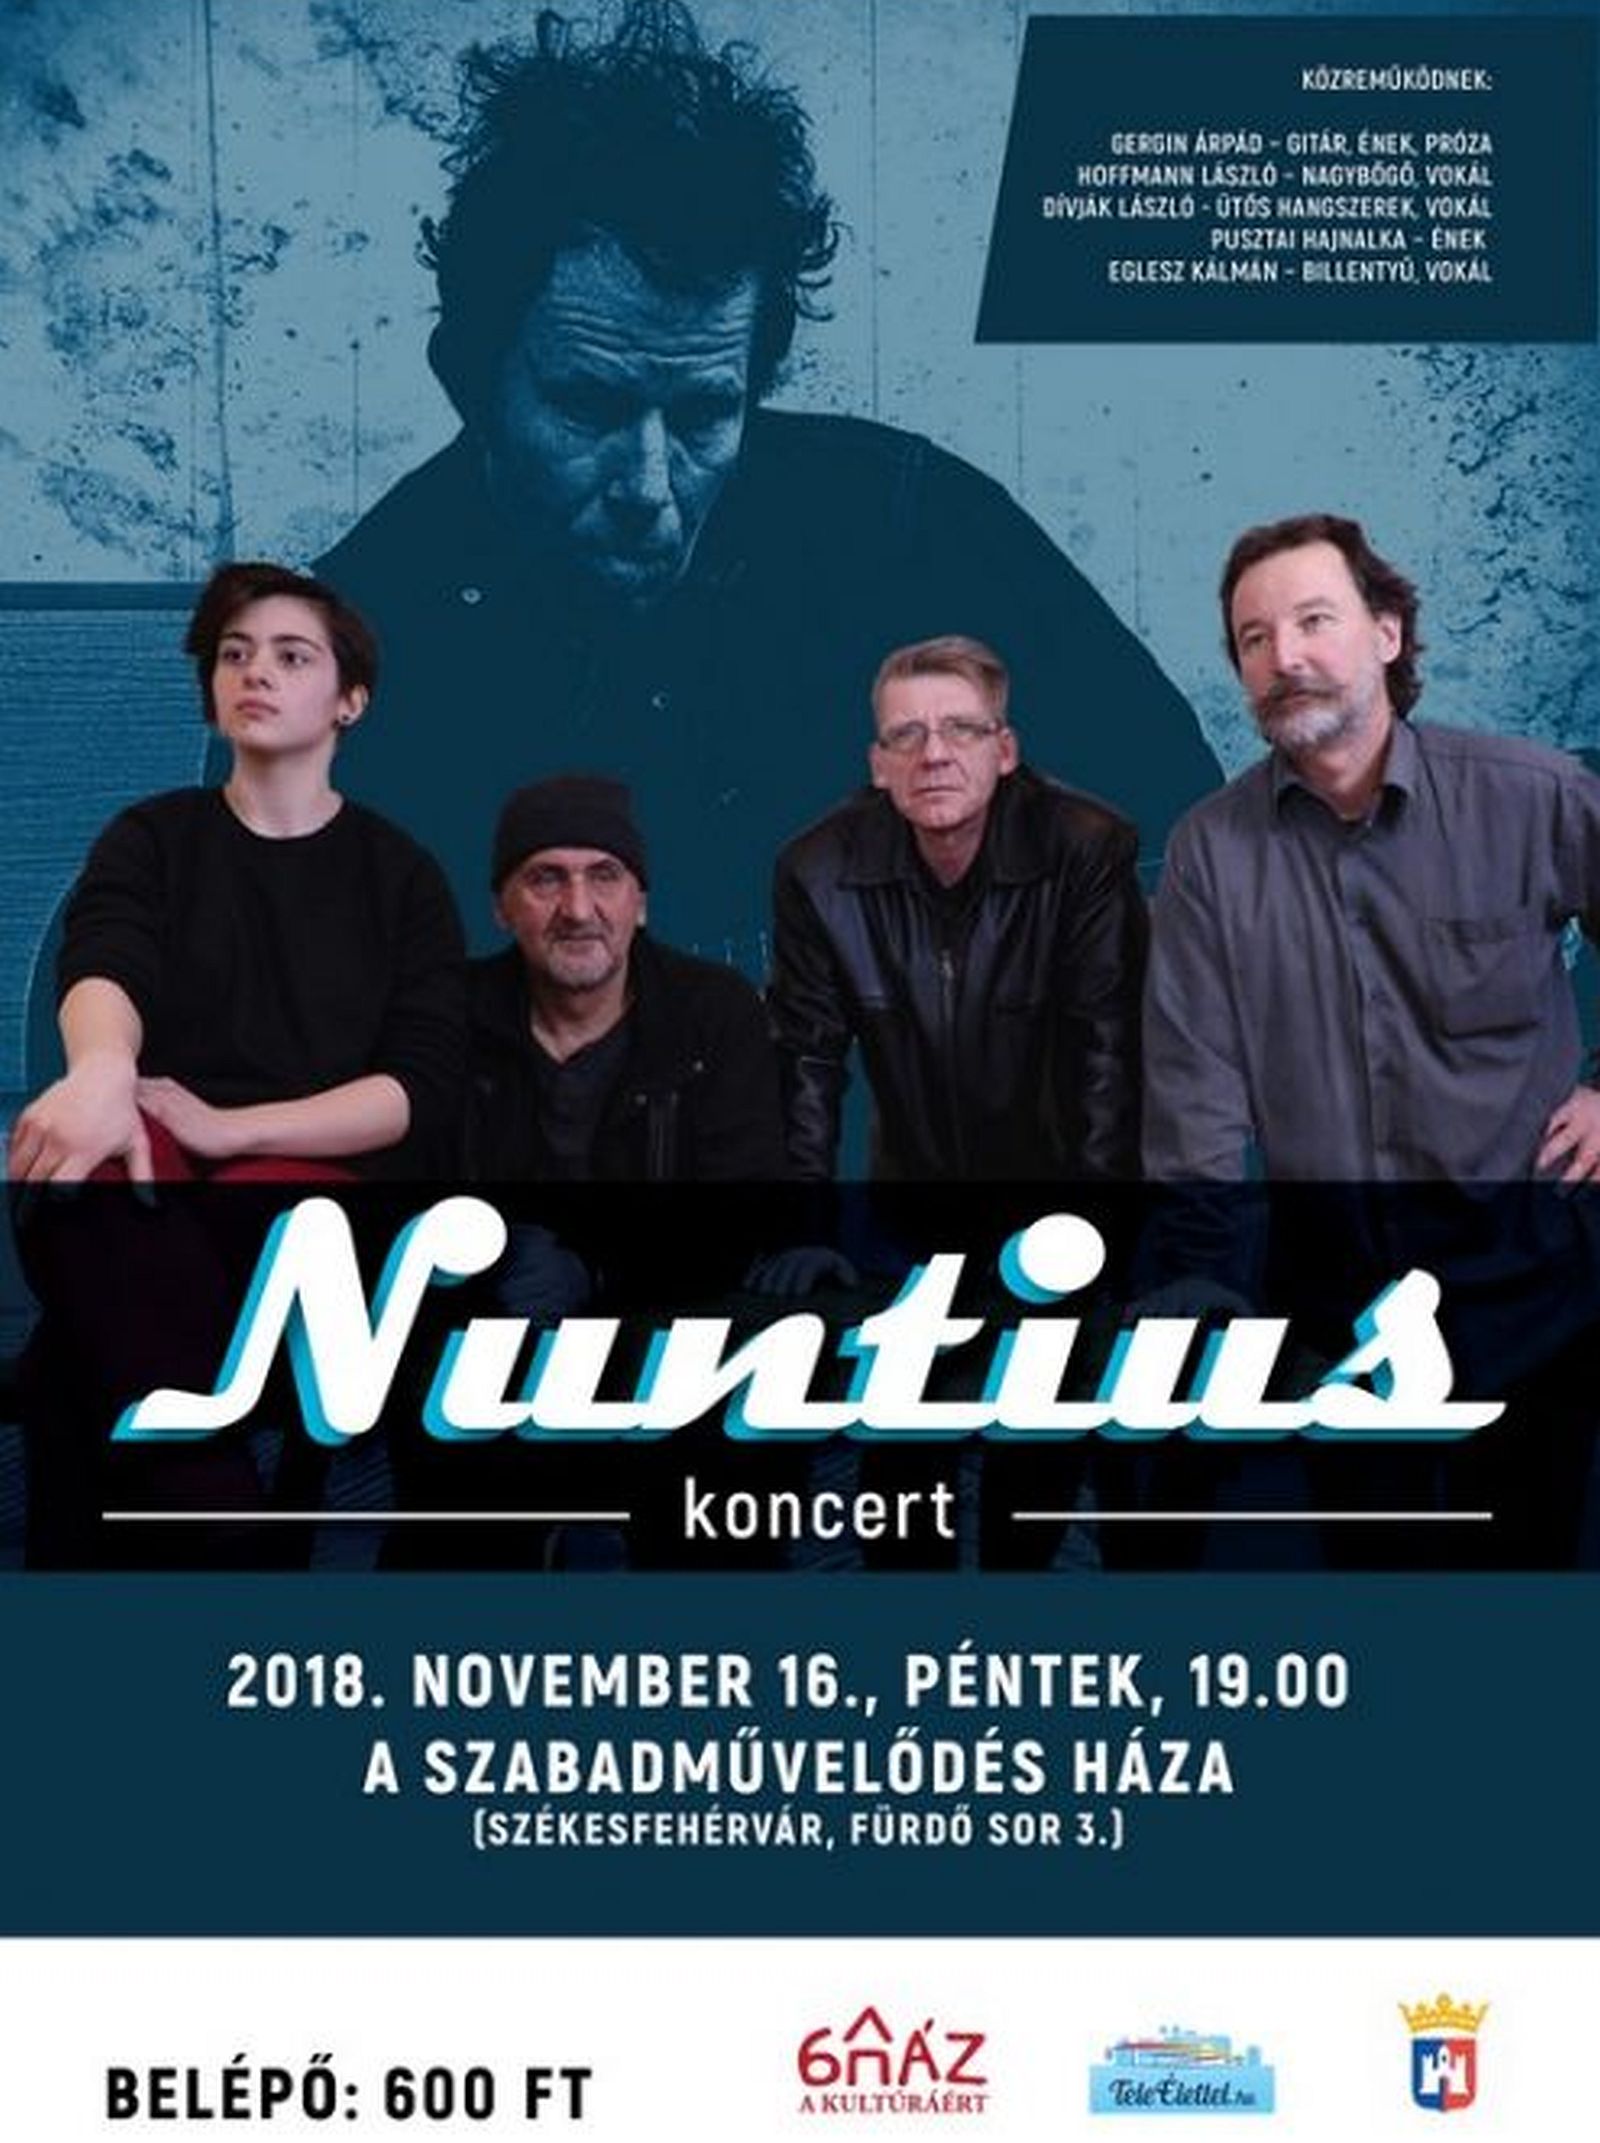 A Nuntius együttes ad koncertet A Szabadművelődés Házában